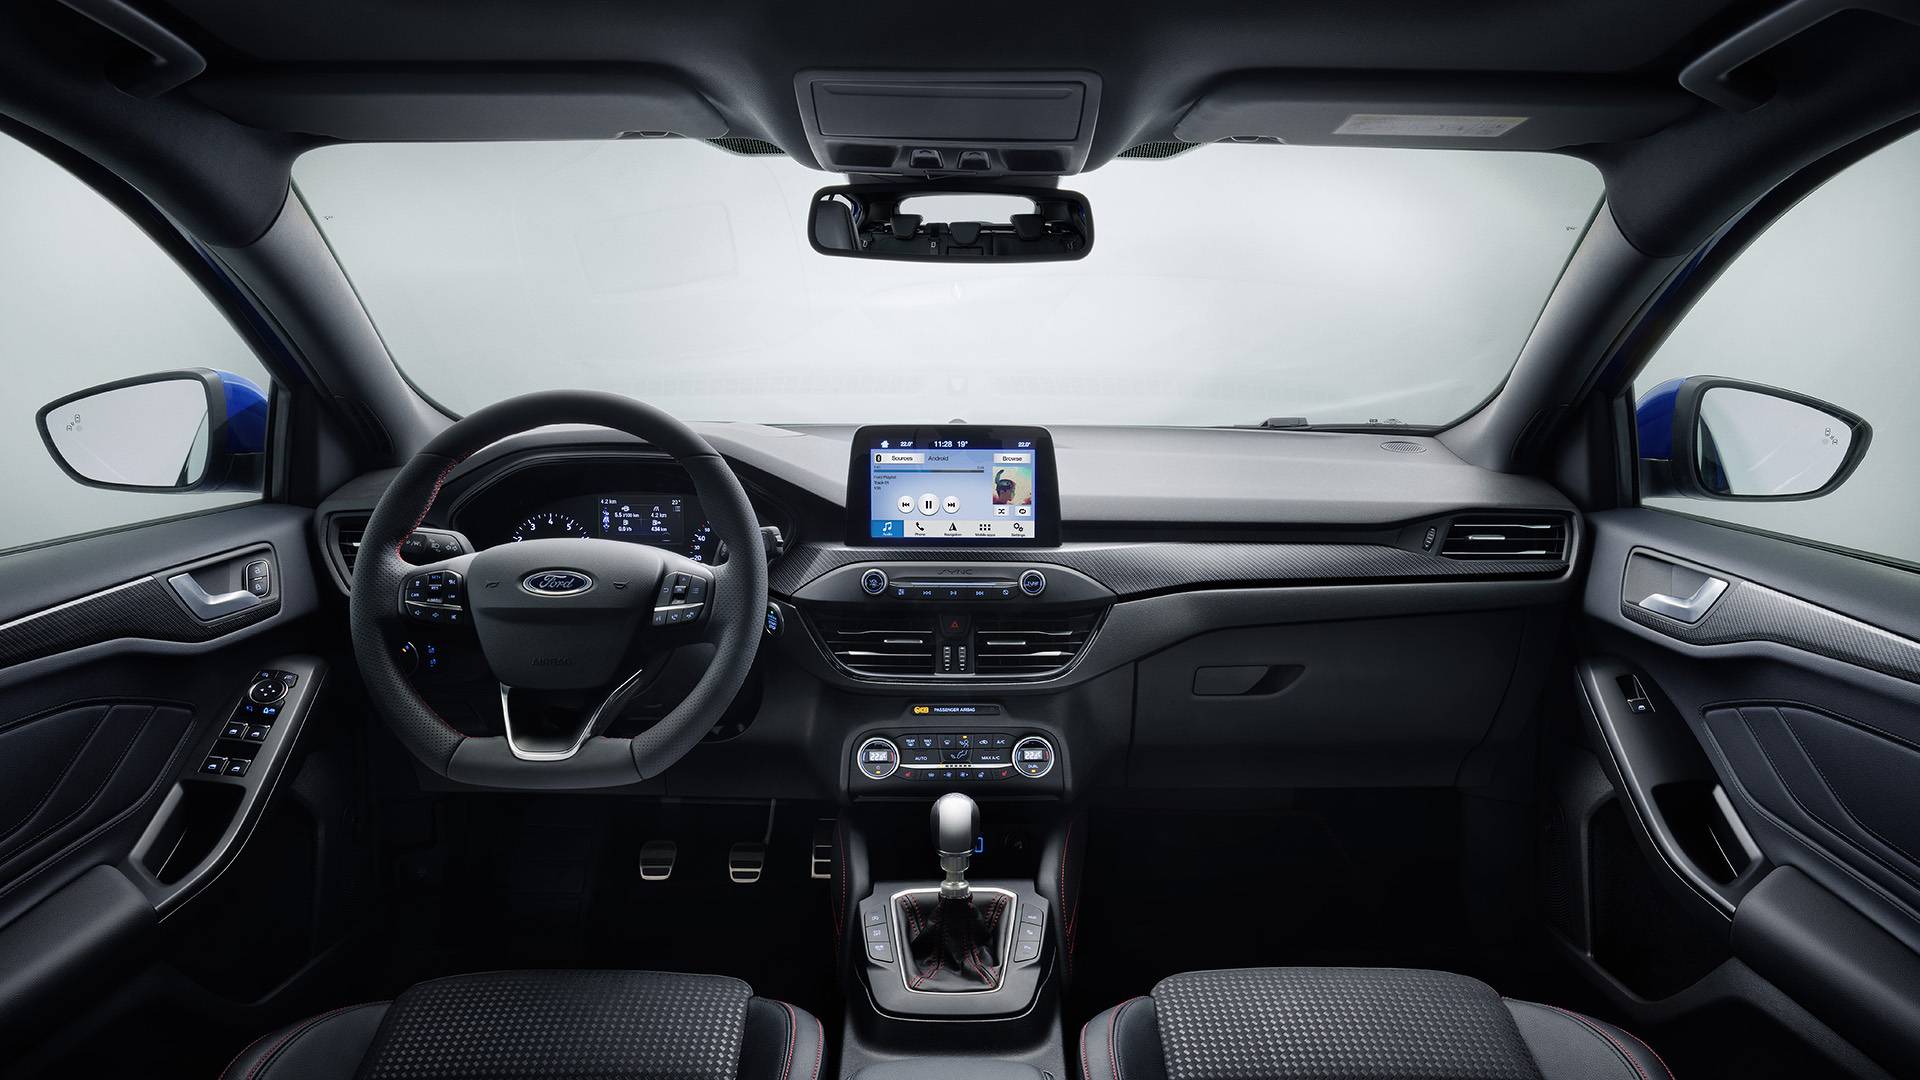 2019-4th-generation-Ford-Focus-interior